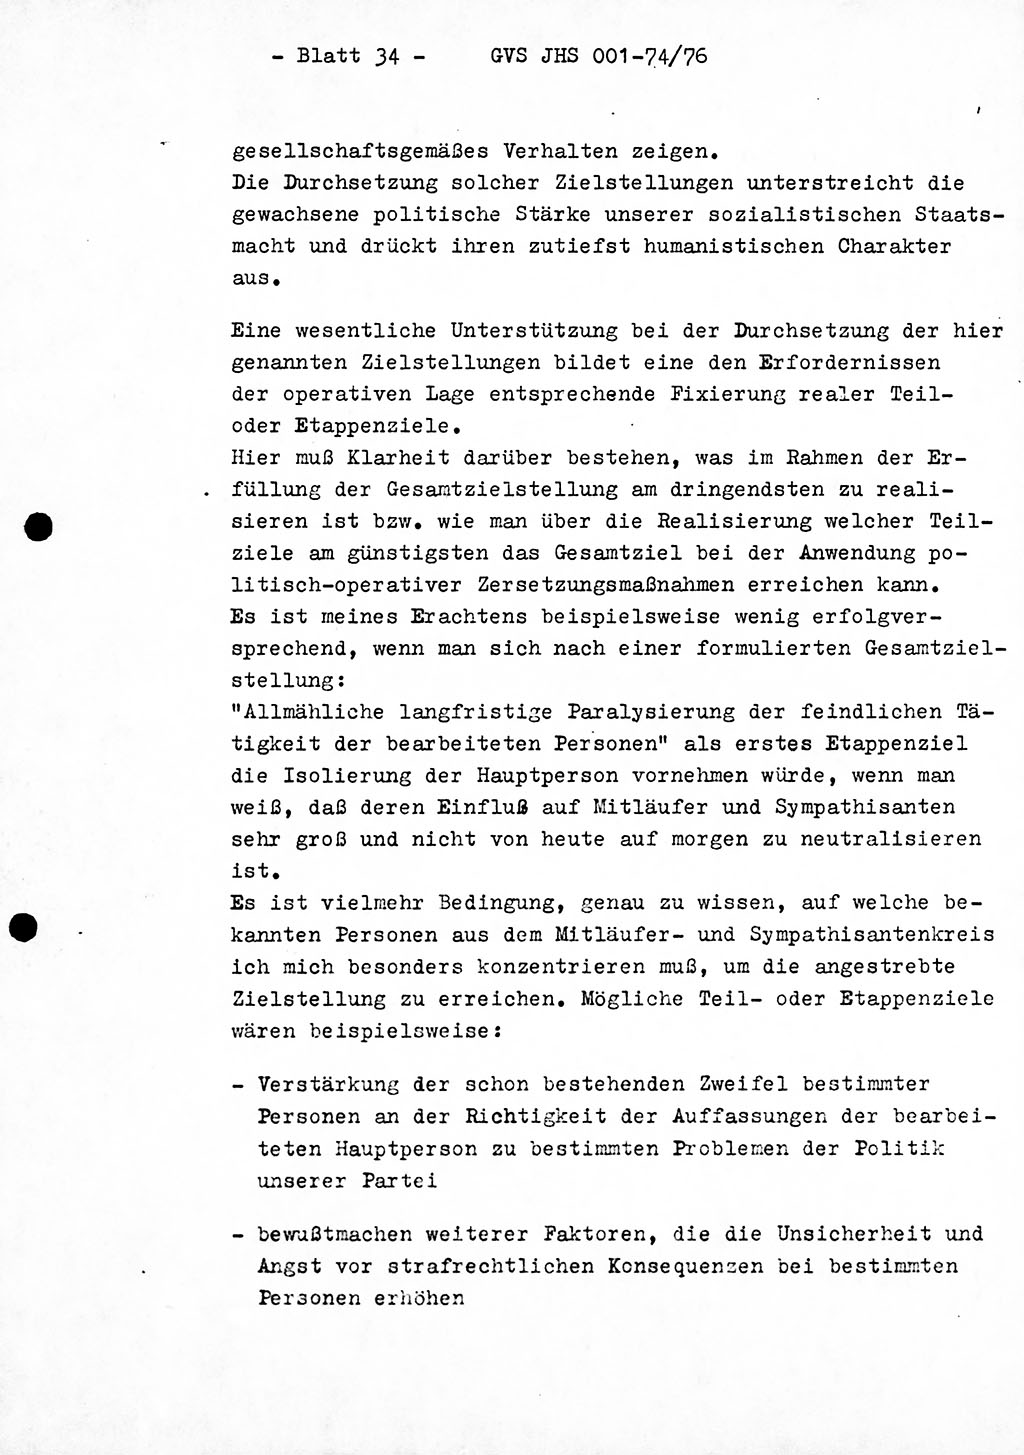 Diplomarbeit Hauptmann Joachim Tischendorf (HA ⅩⅩ), Ministerium für Staatssicherheit (MfS) der Deutschen Demokratischen Republik (DDR), Juristische Hochschule (JHS), Geheime Verschlußsache (GVS) 001-74/76, Potsdam 1976, Seite 34 (Dipl.-Arb. MfS DDR JHS GVS 001-74/76 1976, S. 34)